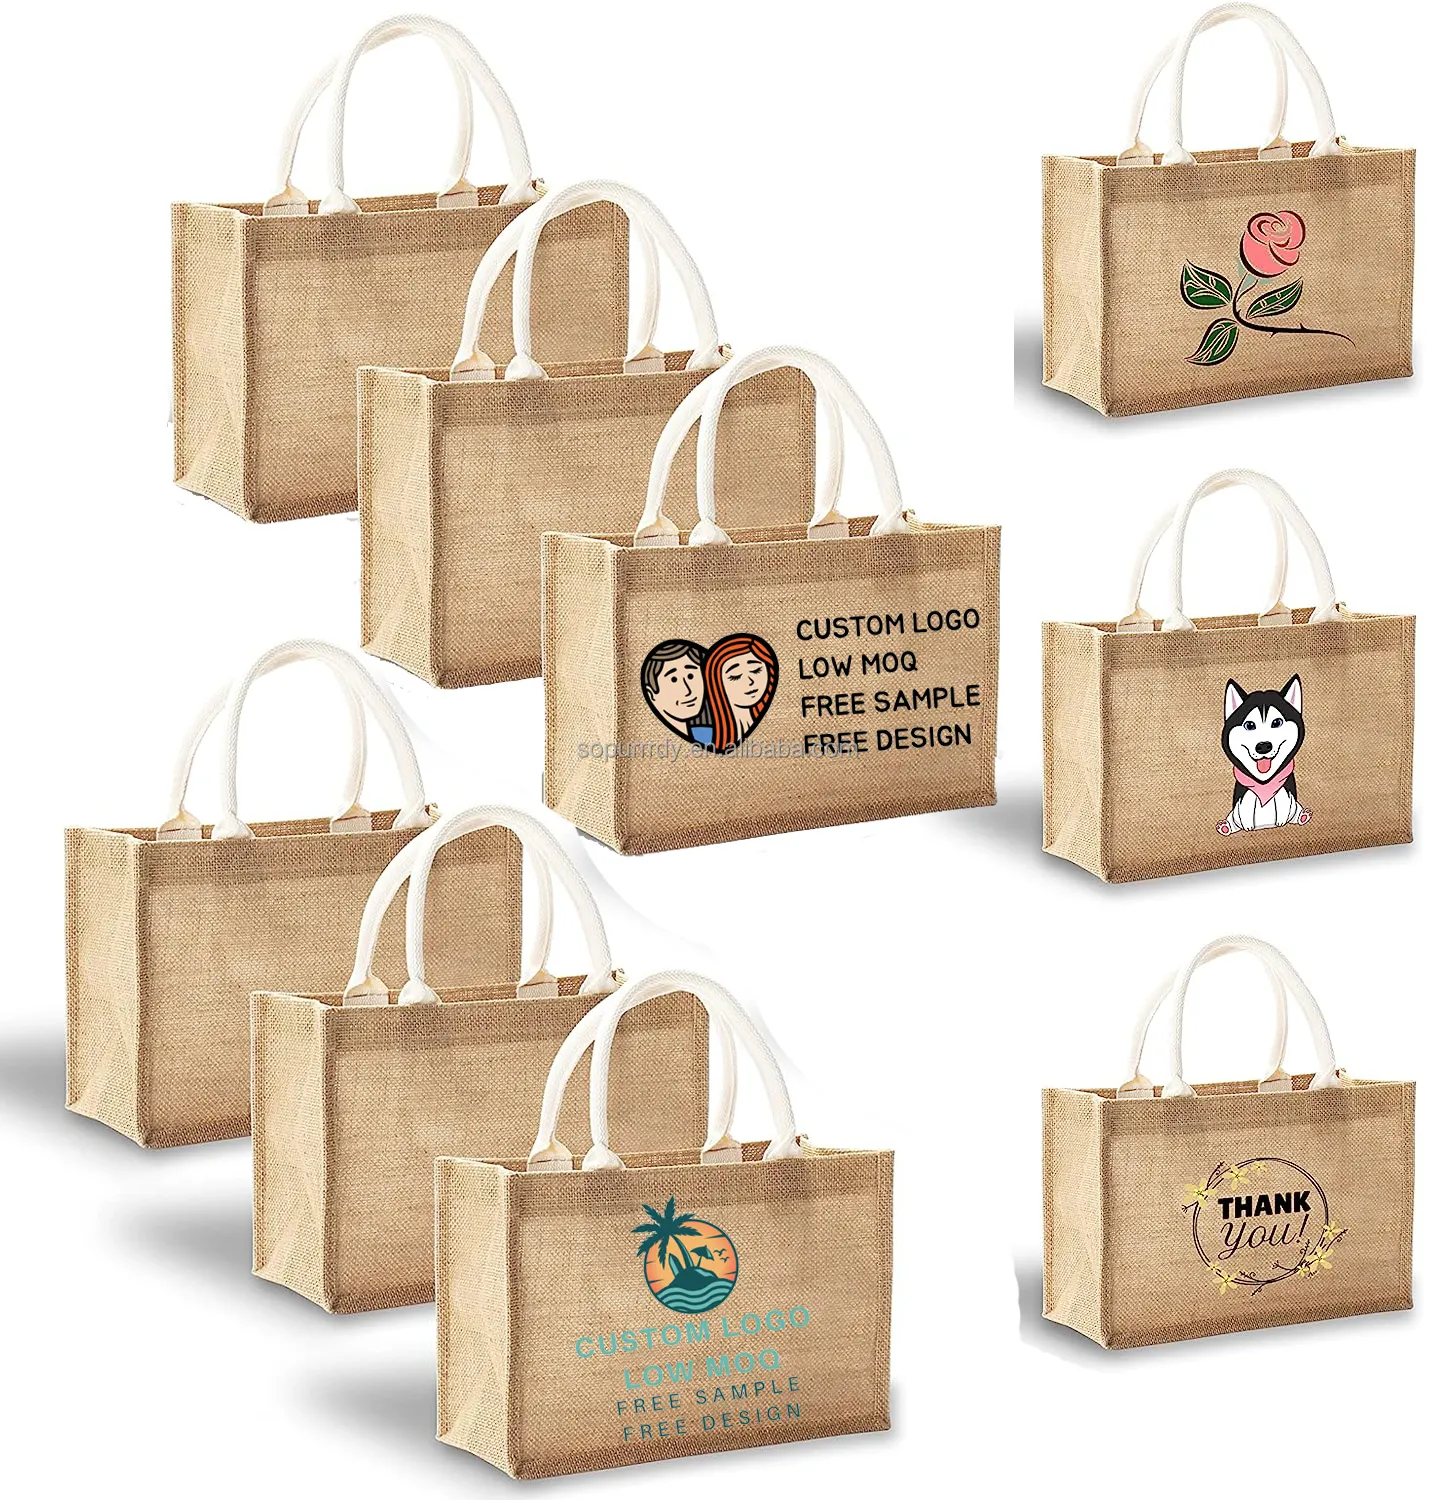 Promosi Logo kustom tas Tote rami goni alami besar dengan pegangan tas jinjing pantai hadiah kosong tas belanja dapat digunakan kembali